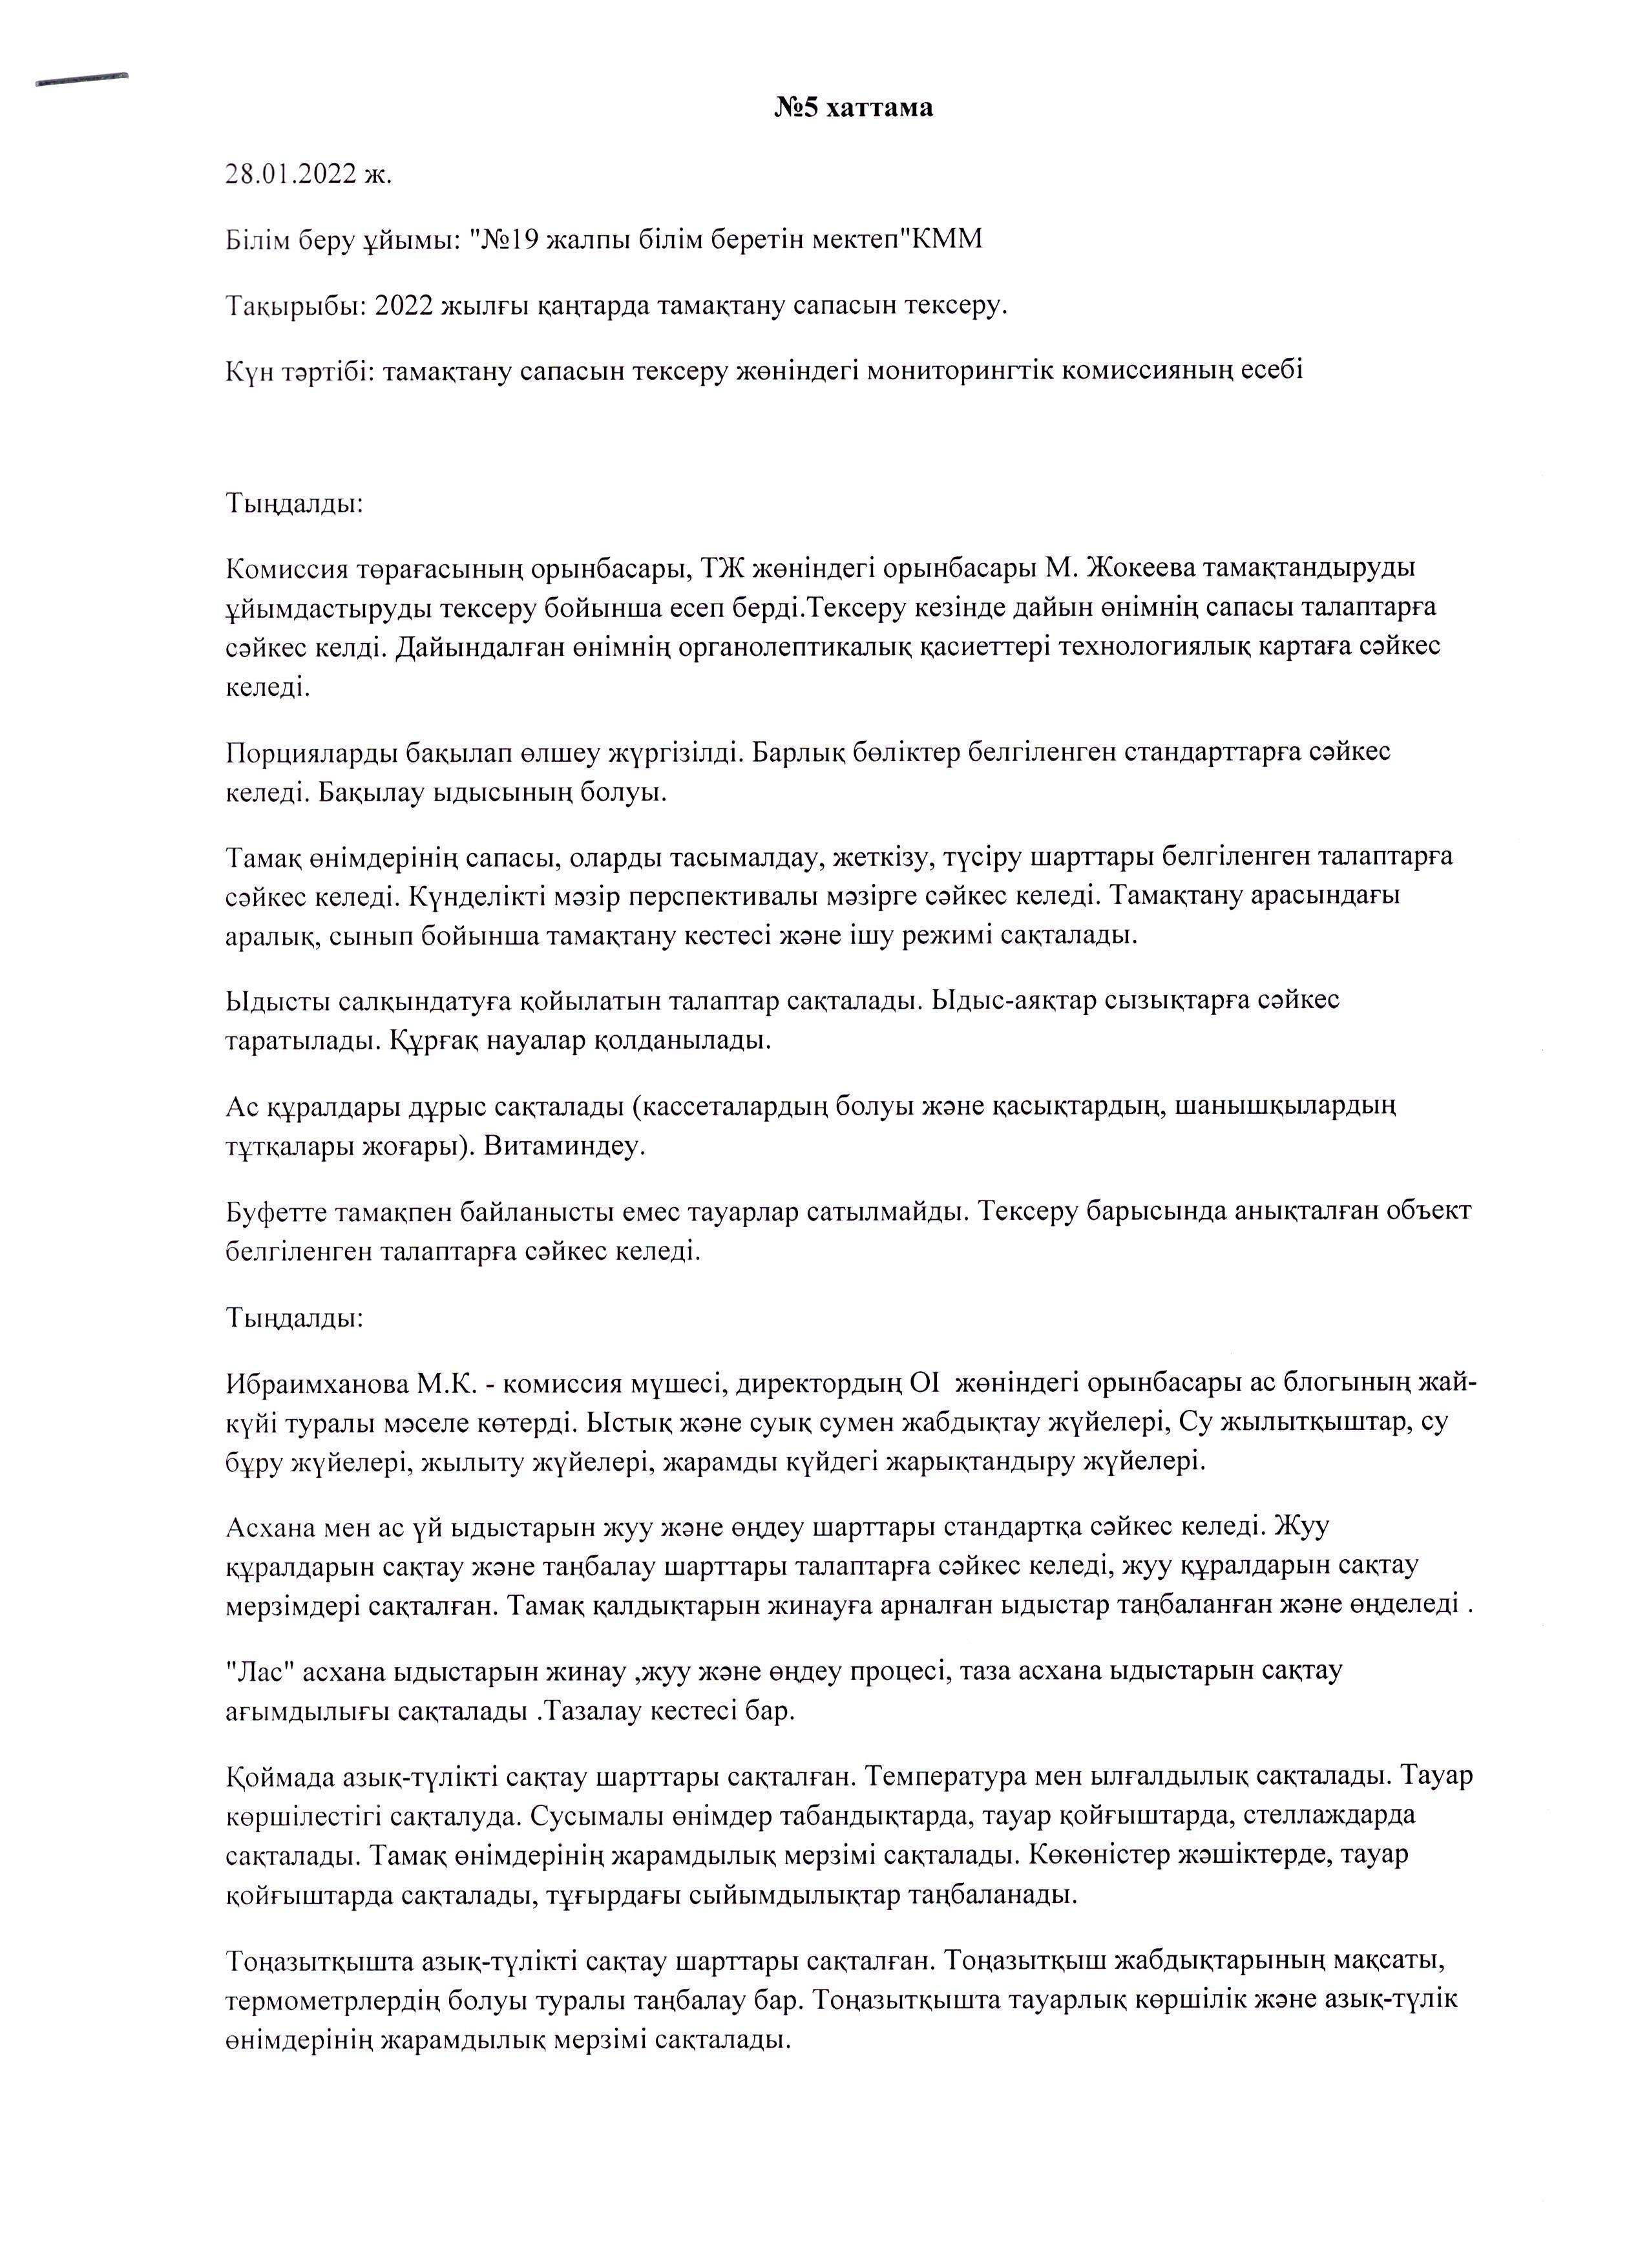 Қаңтар айындағы мониторинг комиссиясының хаттамасы/ Протокол мониторинговой комиссии за Қаңтар